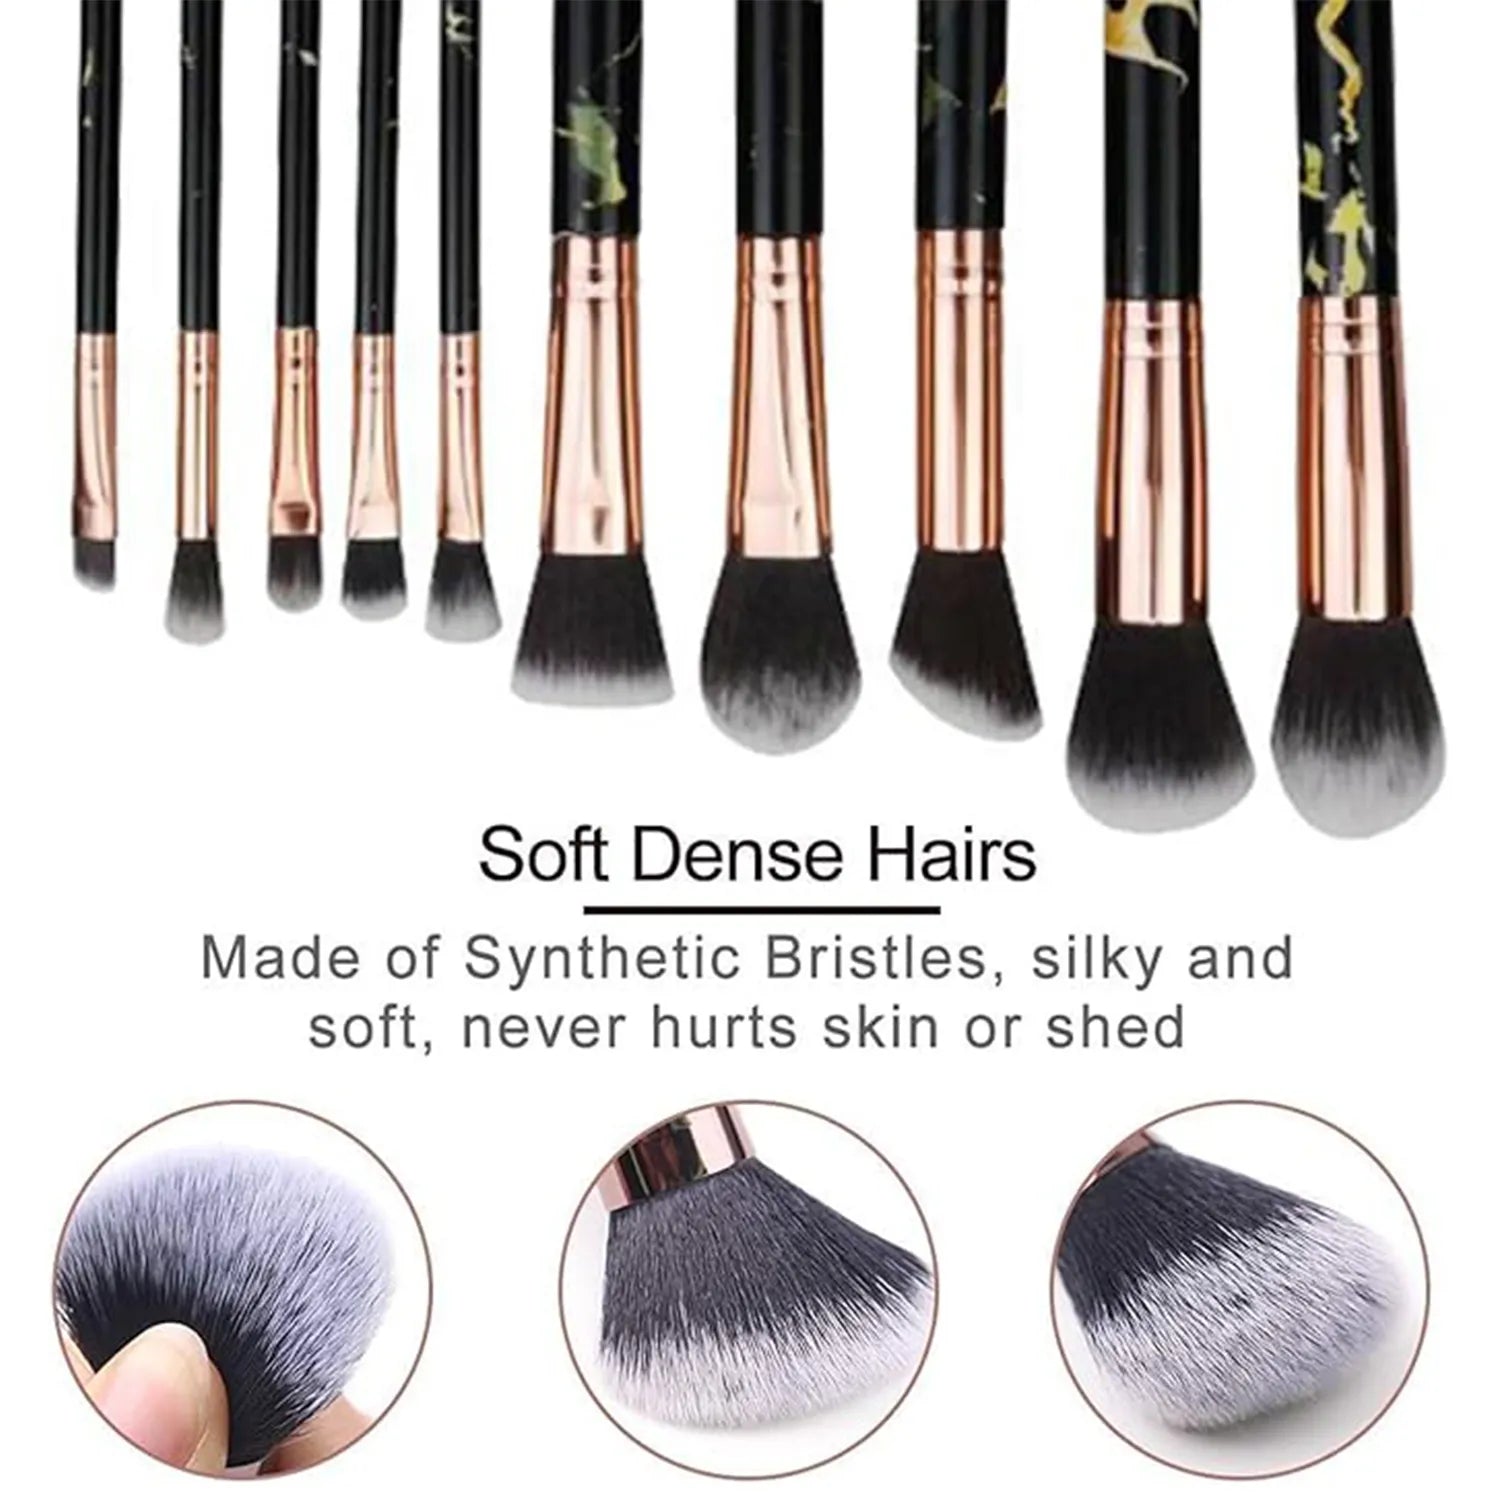 HomeGenics 10-Piece Marble Makeup Brush Set - Foundation, Powder, Blush, Eyeshadow, Contour Brushes